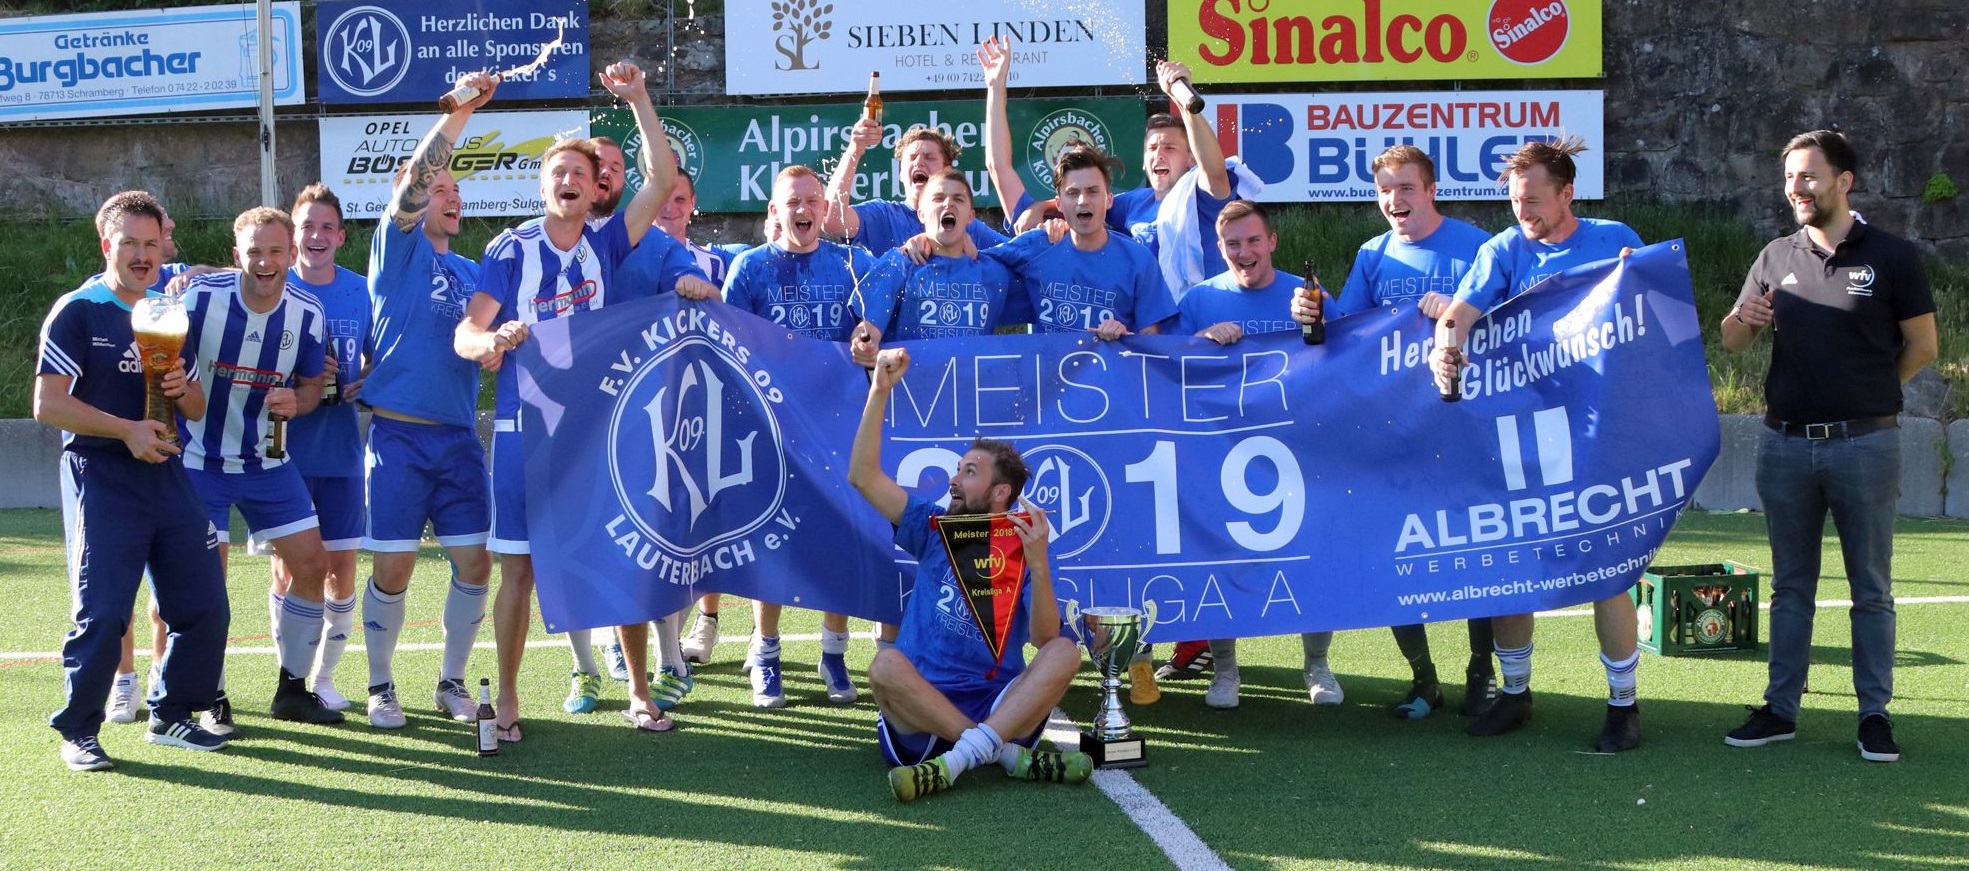 Meisterschaft Kreisliga A1 (08.06.2019)